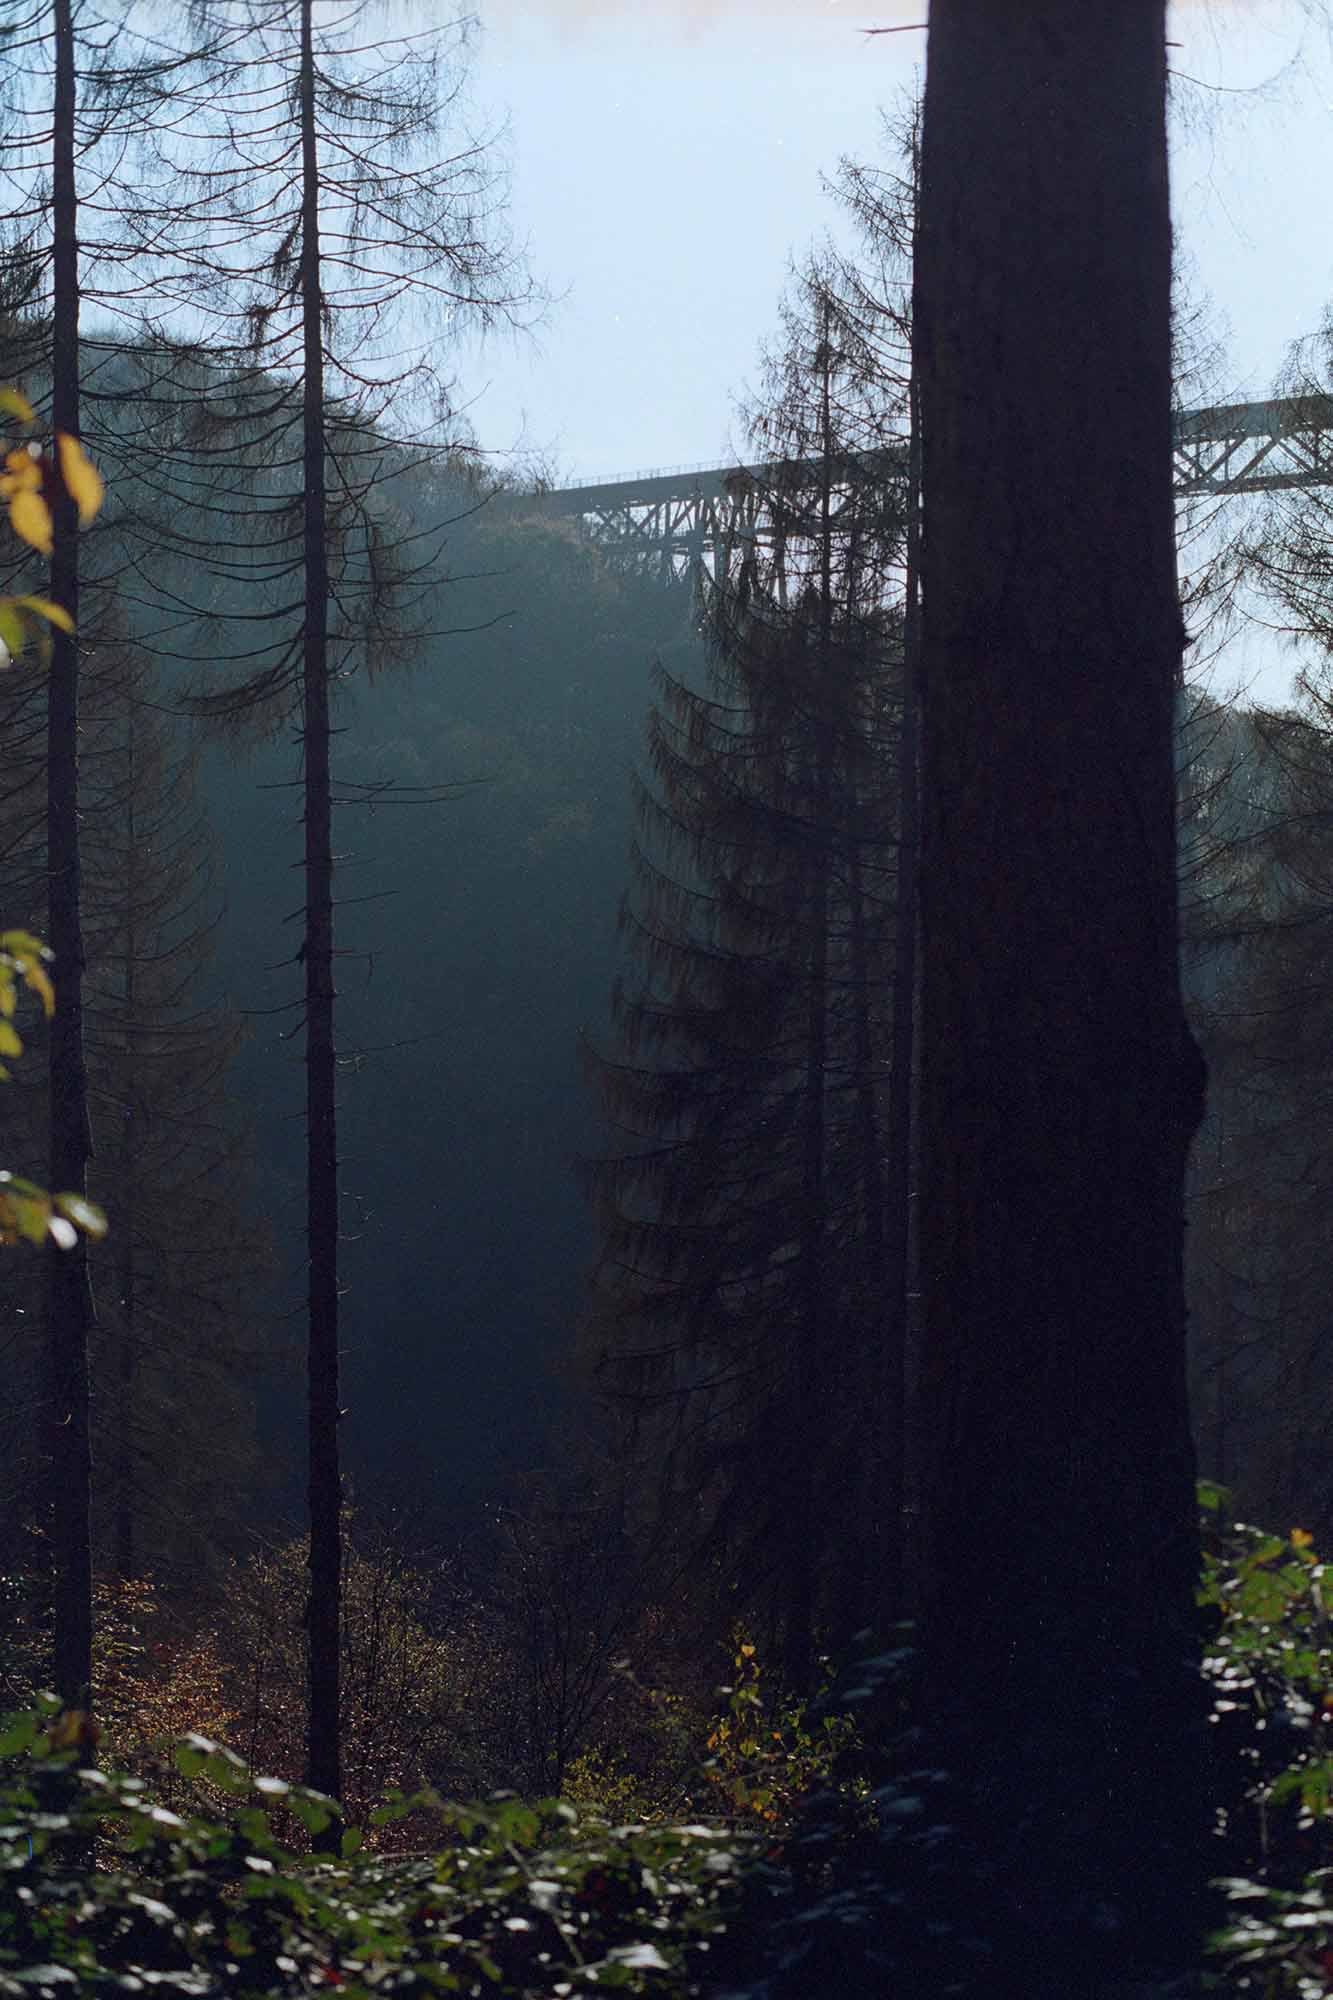 Müngstener Brücke im Wald